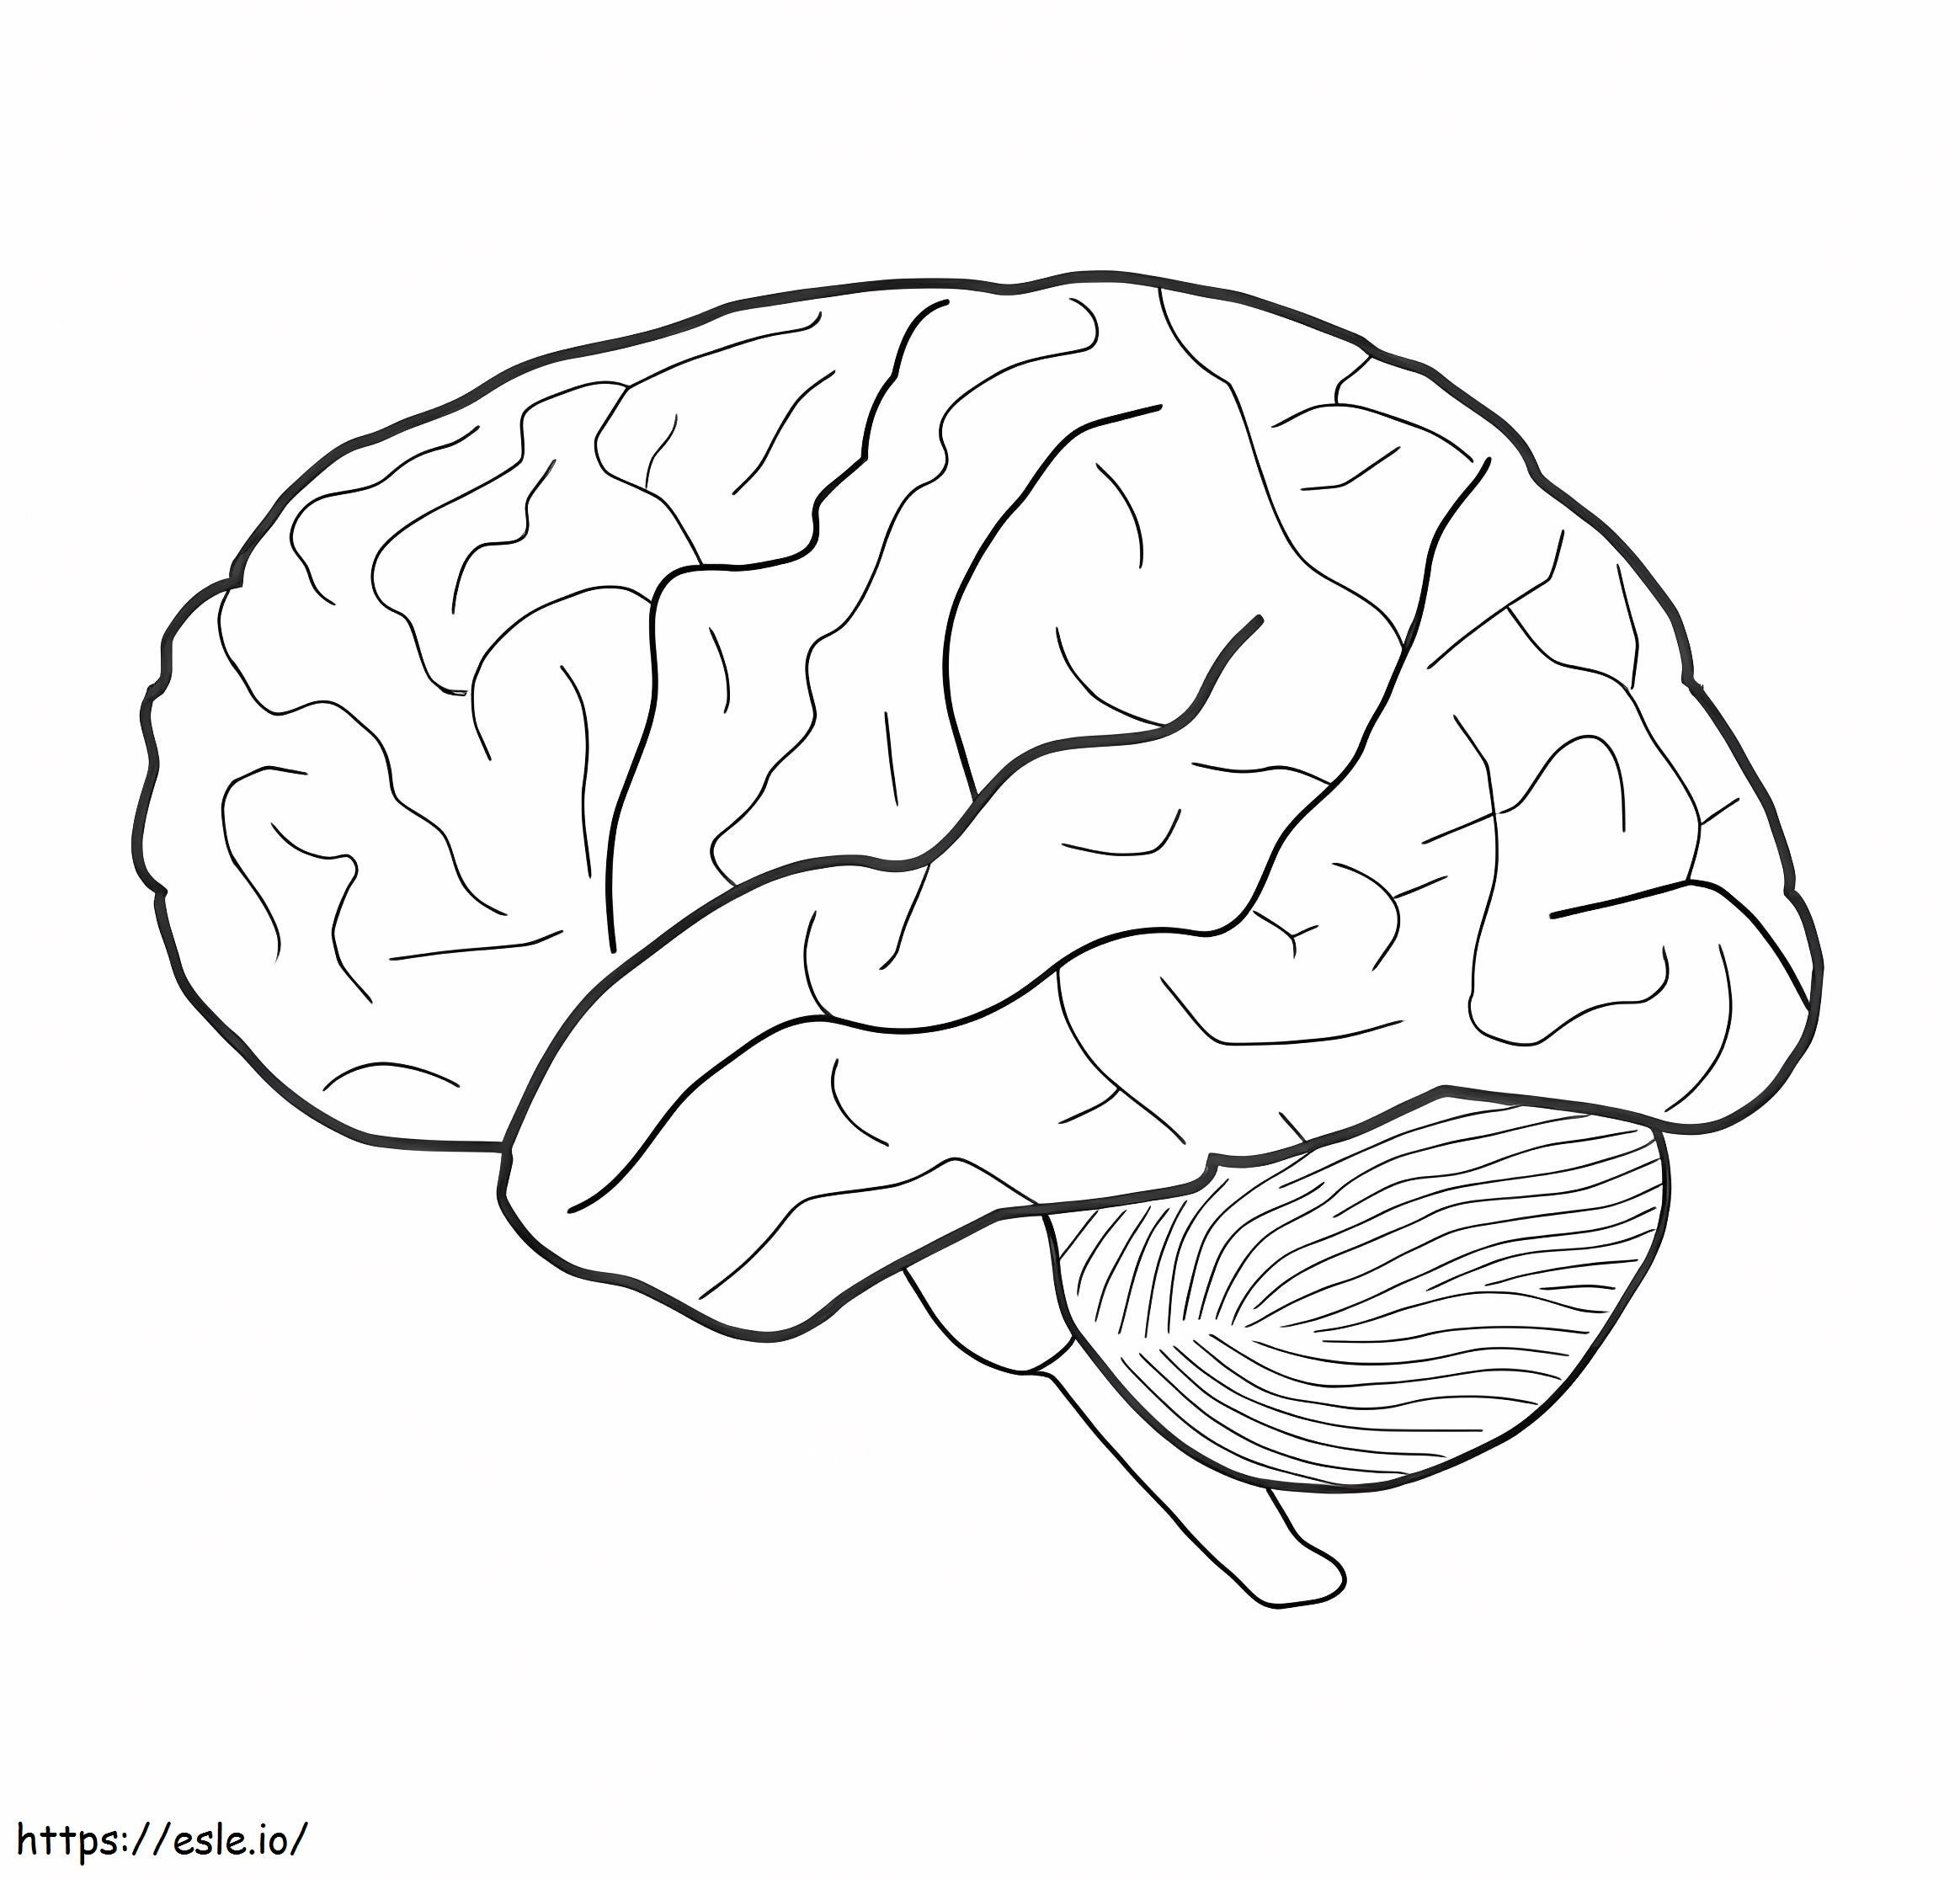 Menschliches Gehirn 3 ausmalbilder